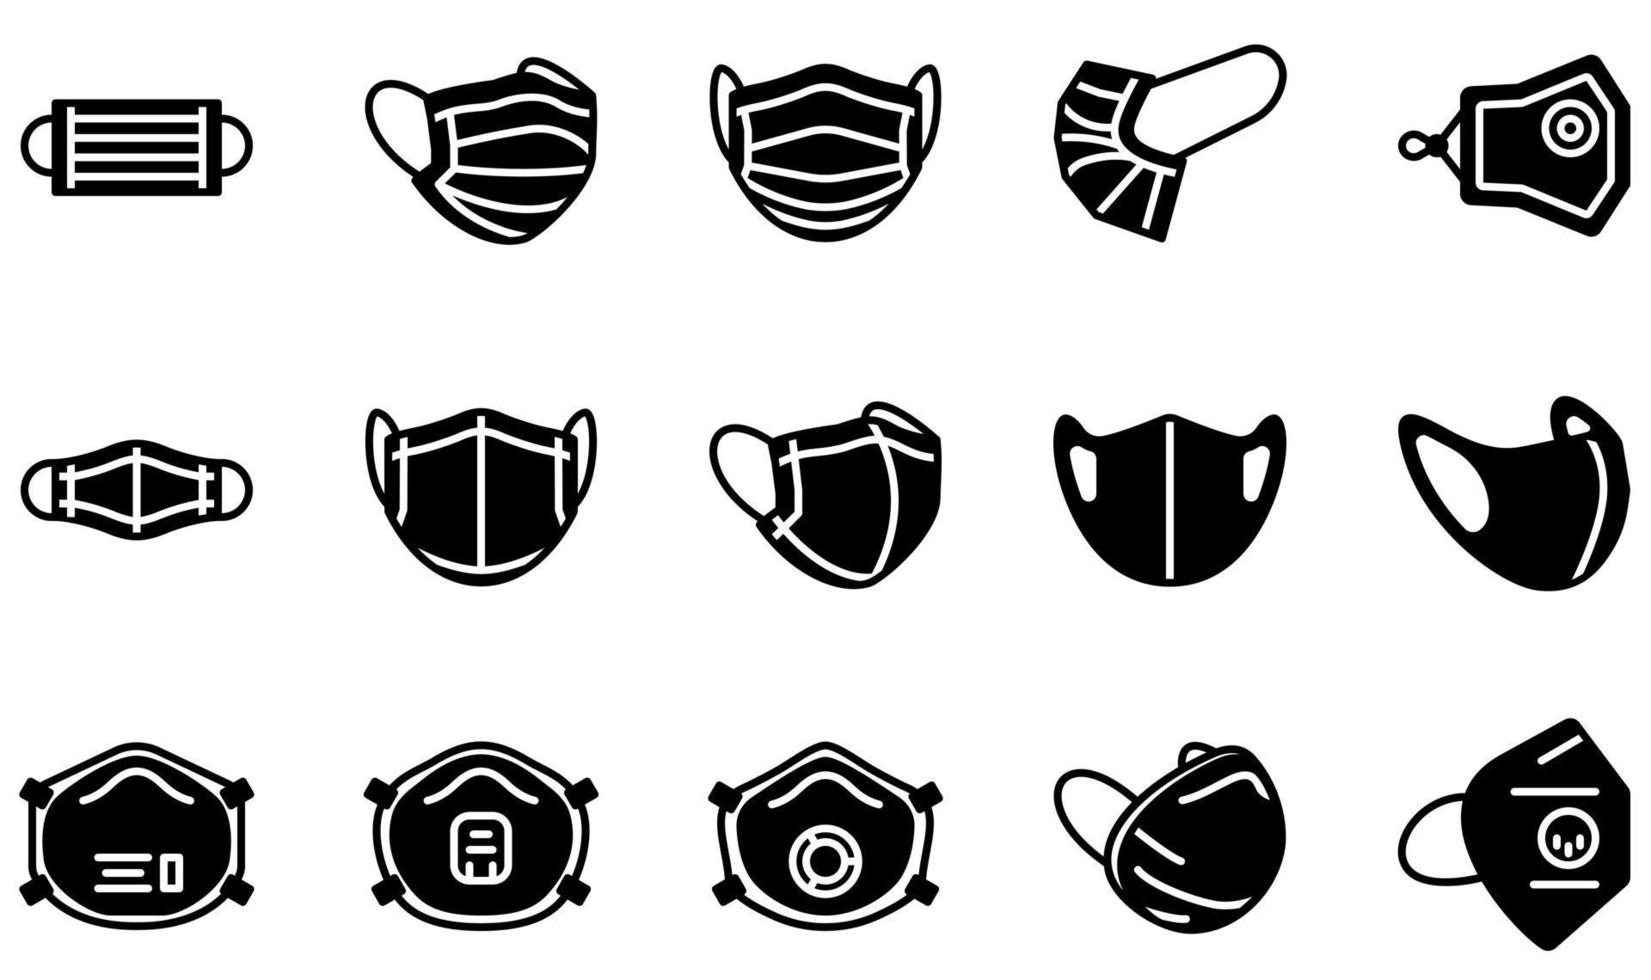 conjunto de ícones vetoriais relacionados à máscara facial protetora. contém ícones como máscara médica, máscara de pano, máscara de esponja, máscara respiratória, máscara facial, máscara e muito mais. vetor